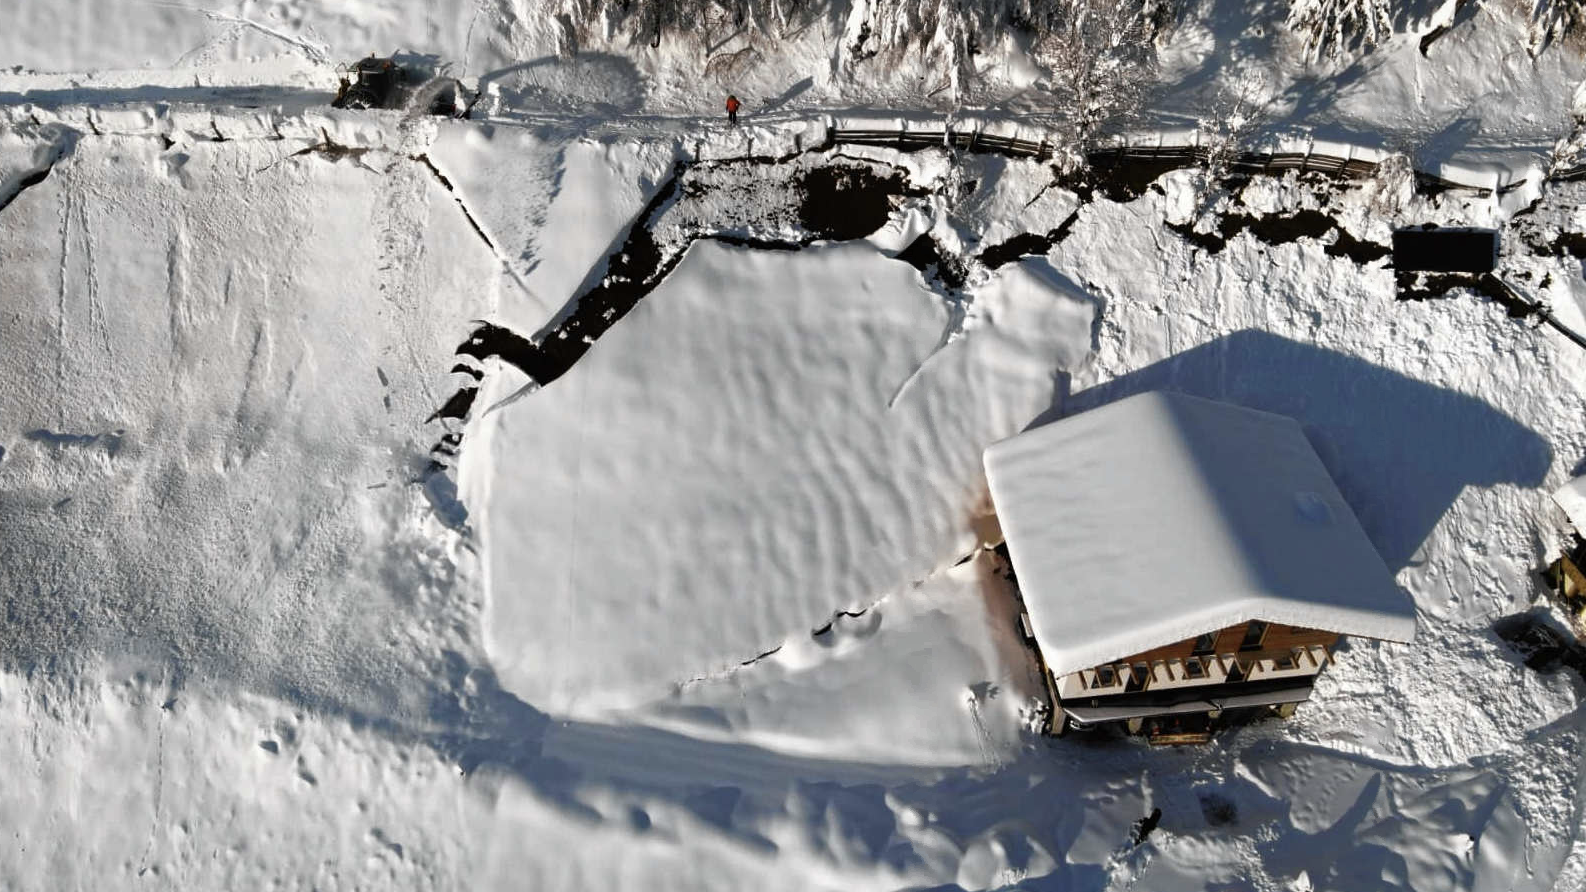 Auch die Schneemassen auf dem Dach bereiten ihnen Sorge. (Bild: Norbert Jank)